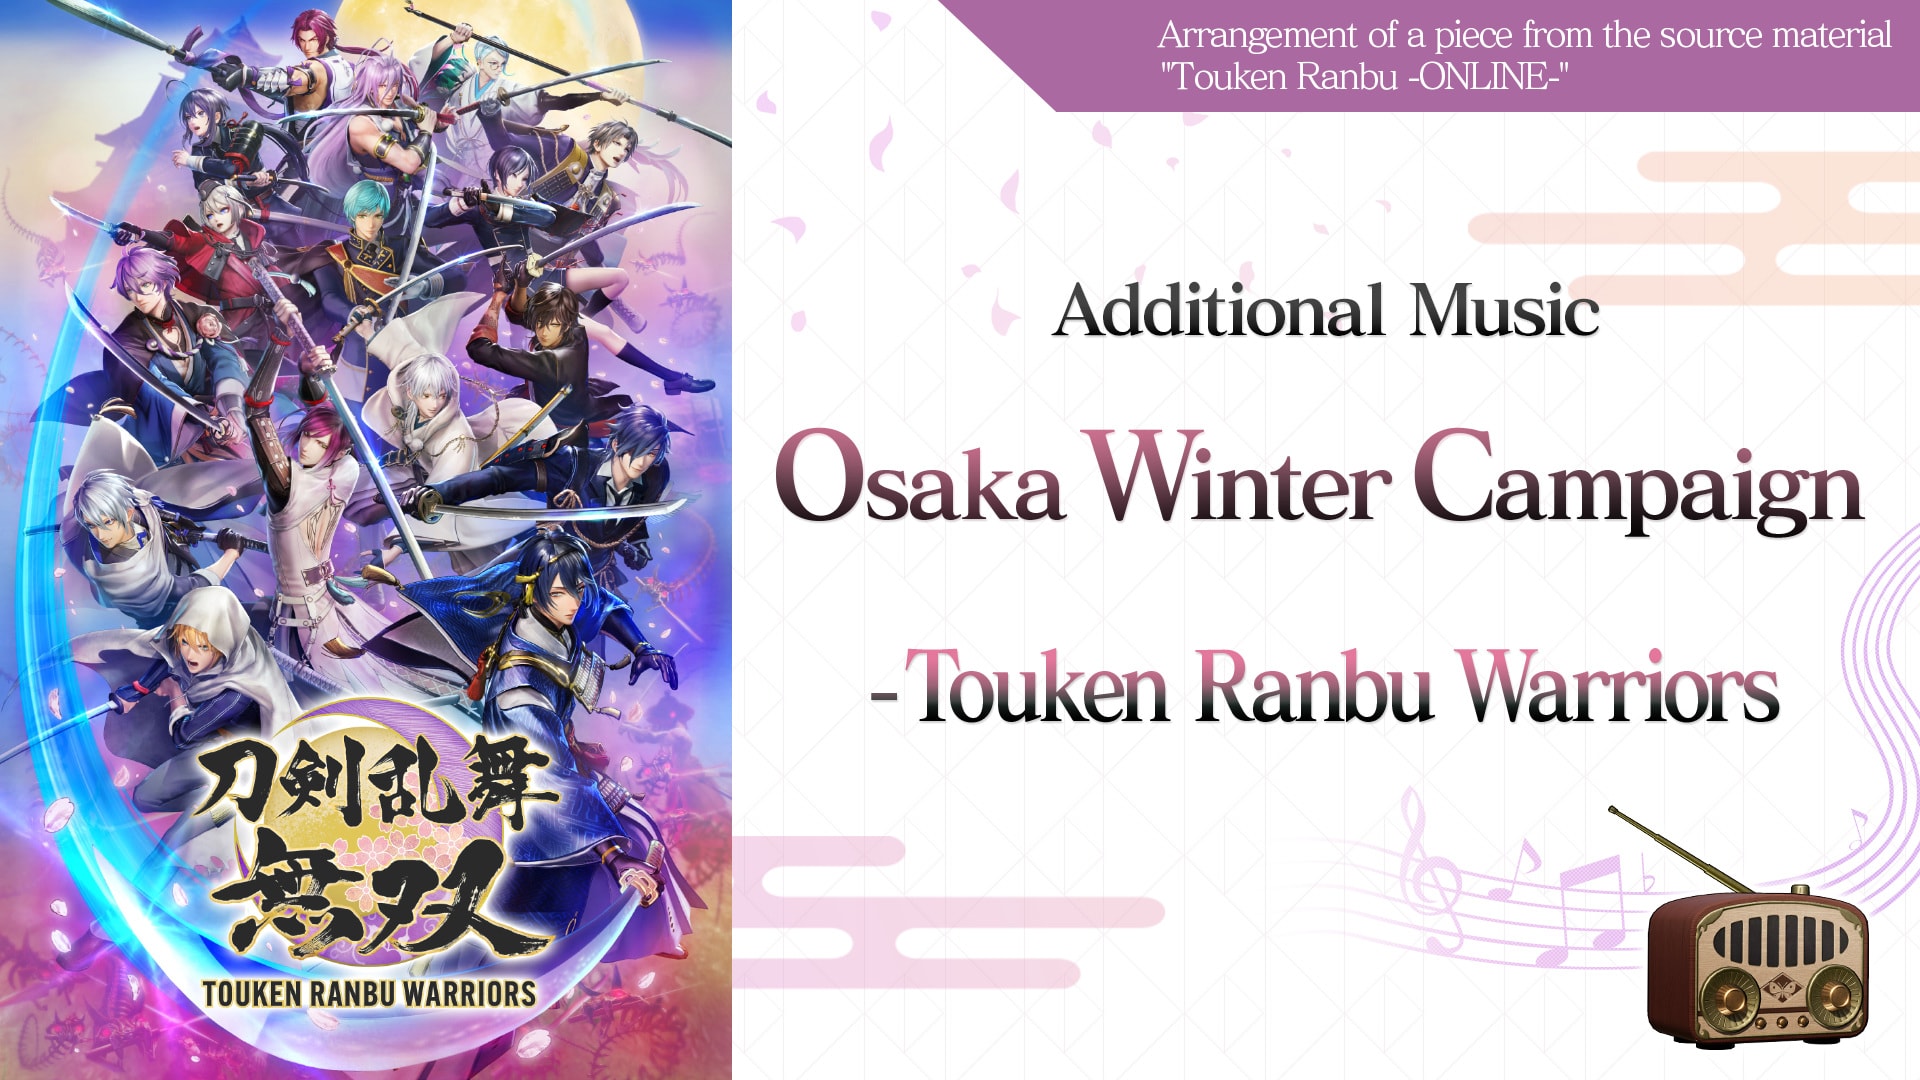 Additional Music "Osaka Winter Campaign - Touken Ranbu Warriors"